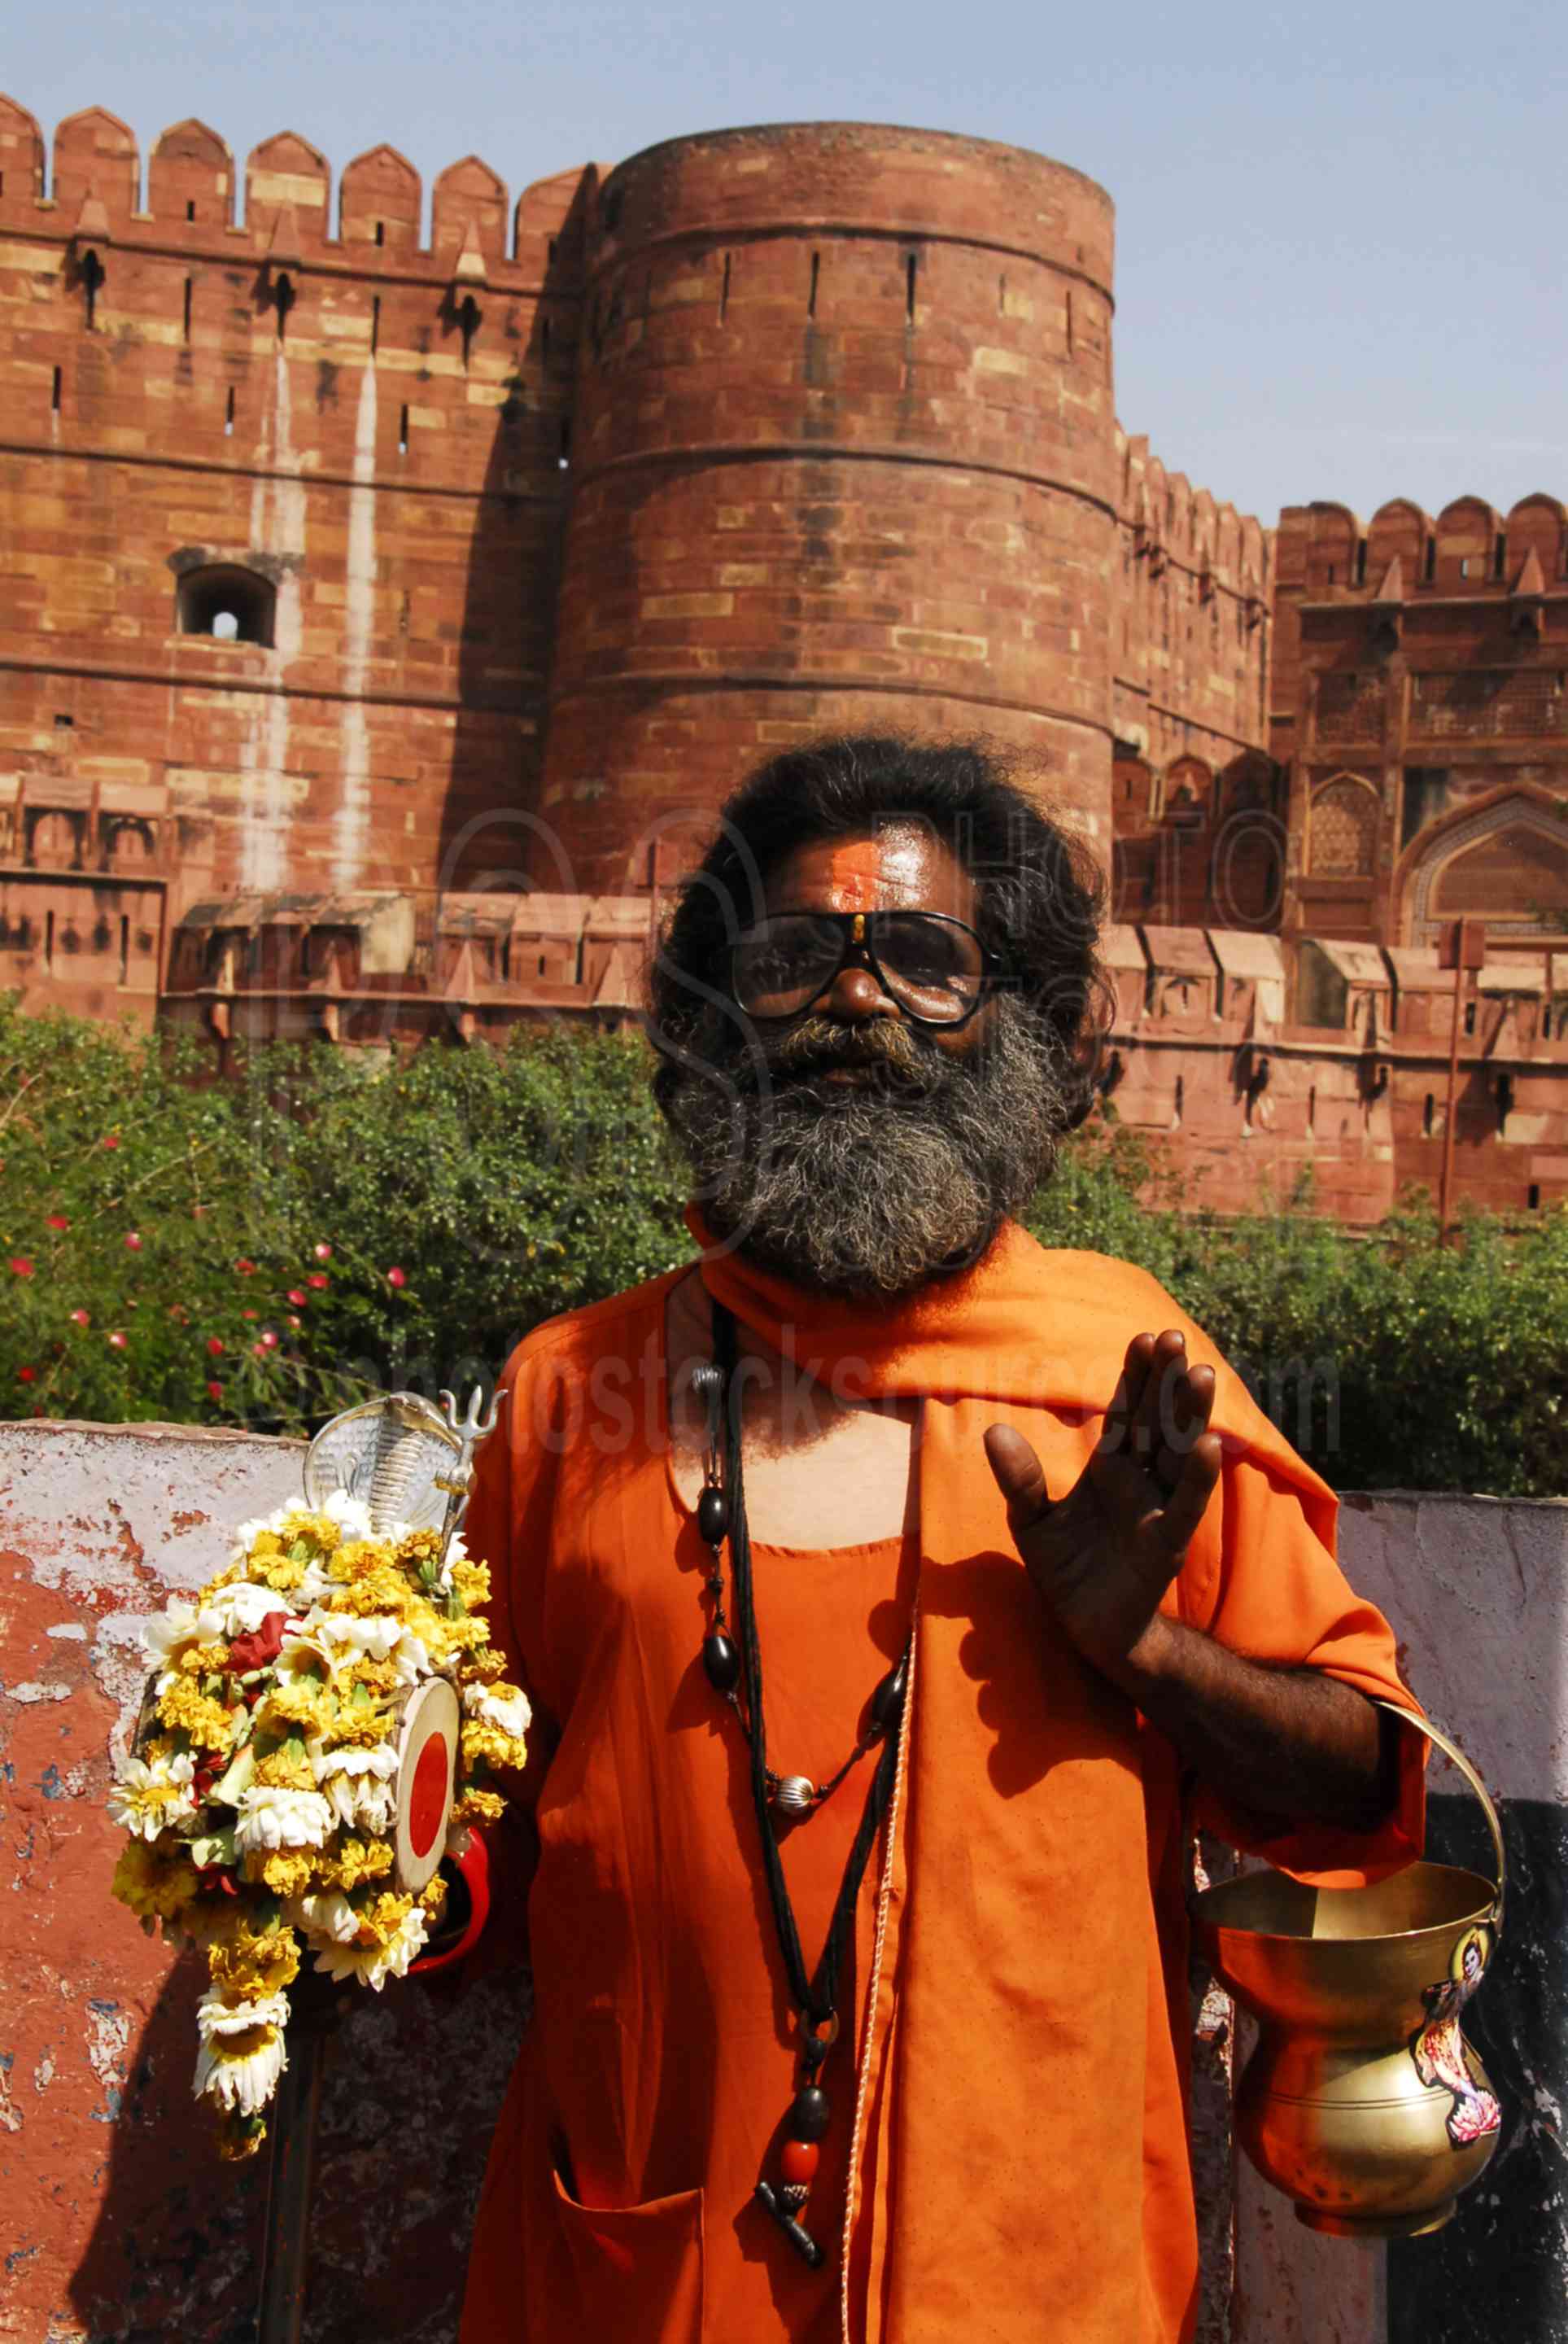 Sadhu Holy Man,fort,landmark,walls,gate,people,holy man